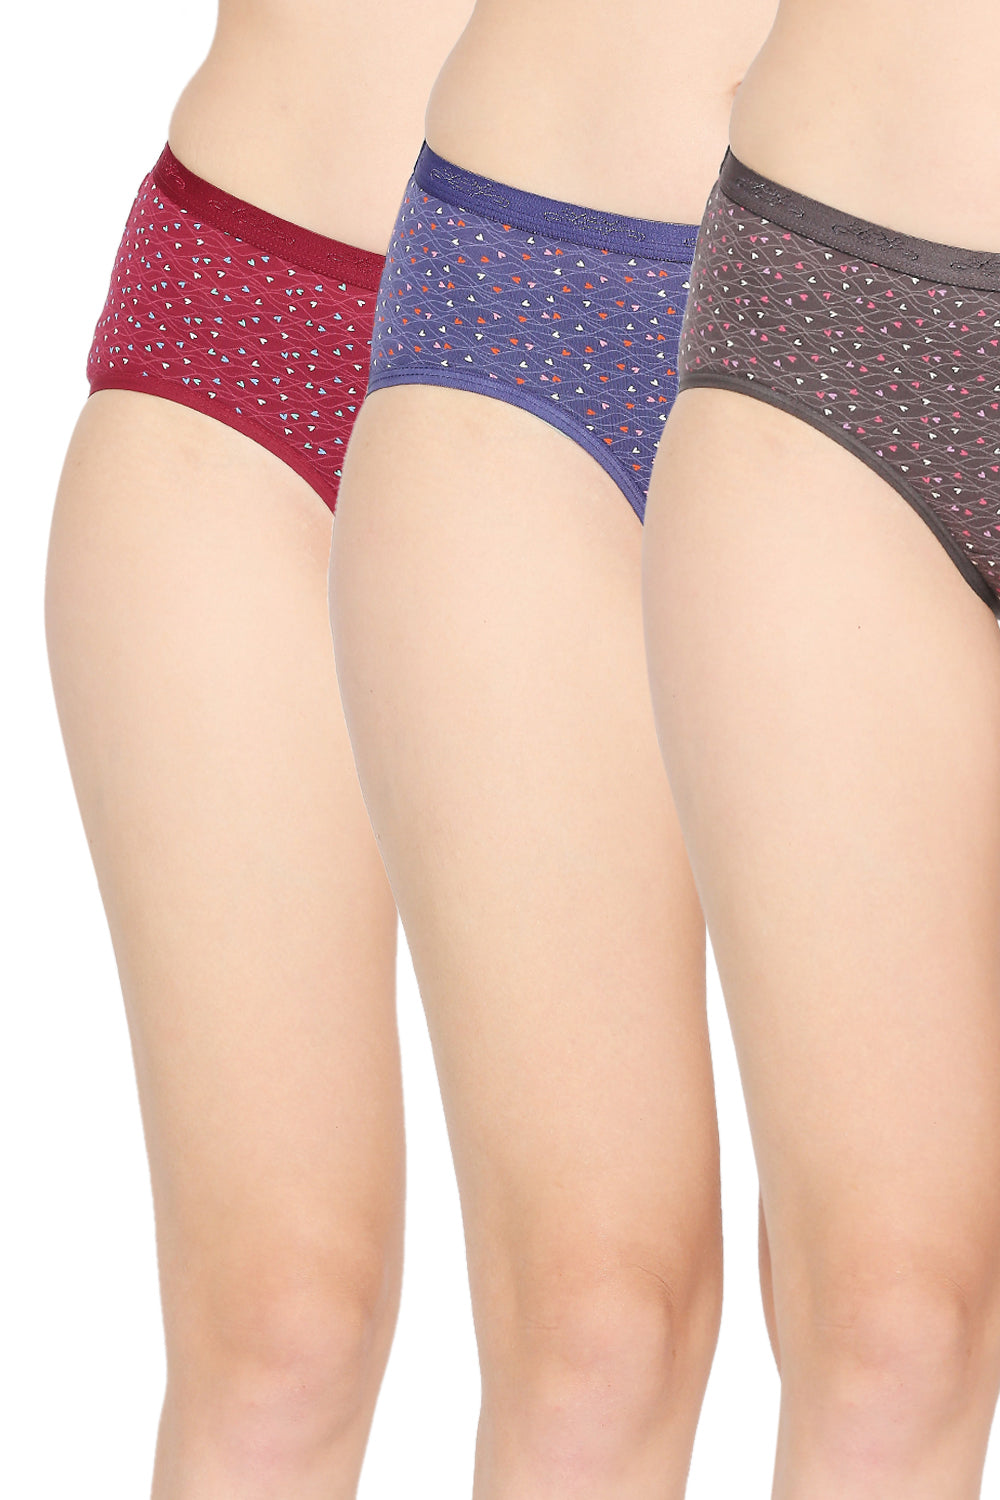 RedRose Pack of 3 Printed Panties